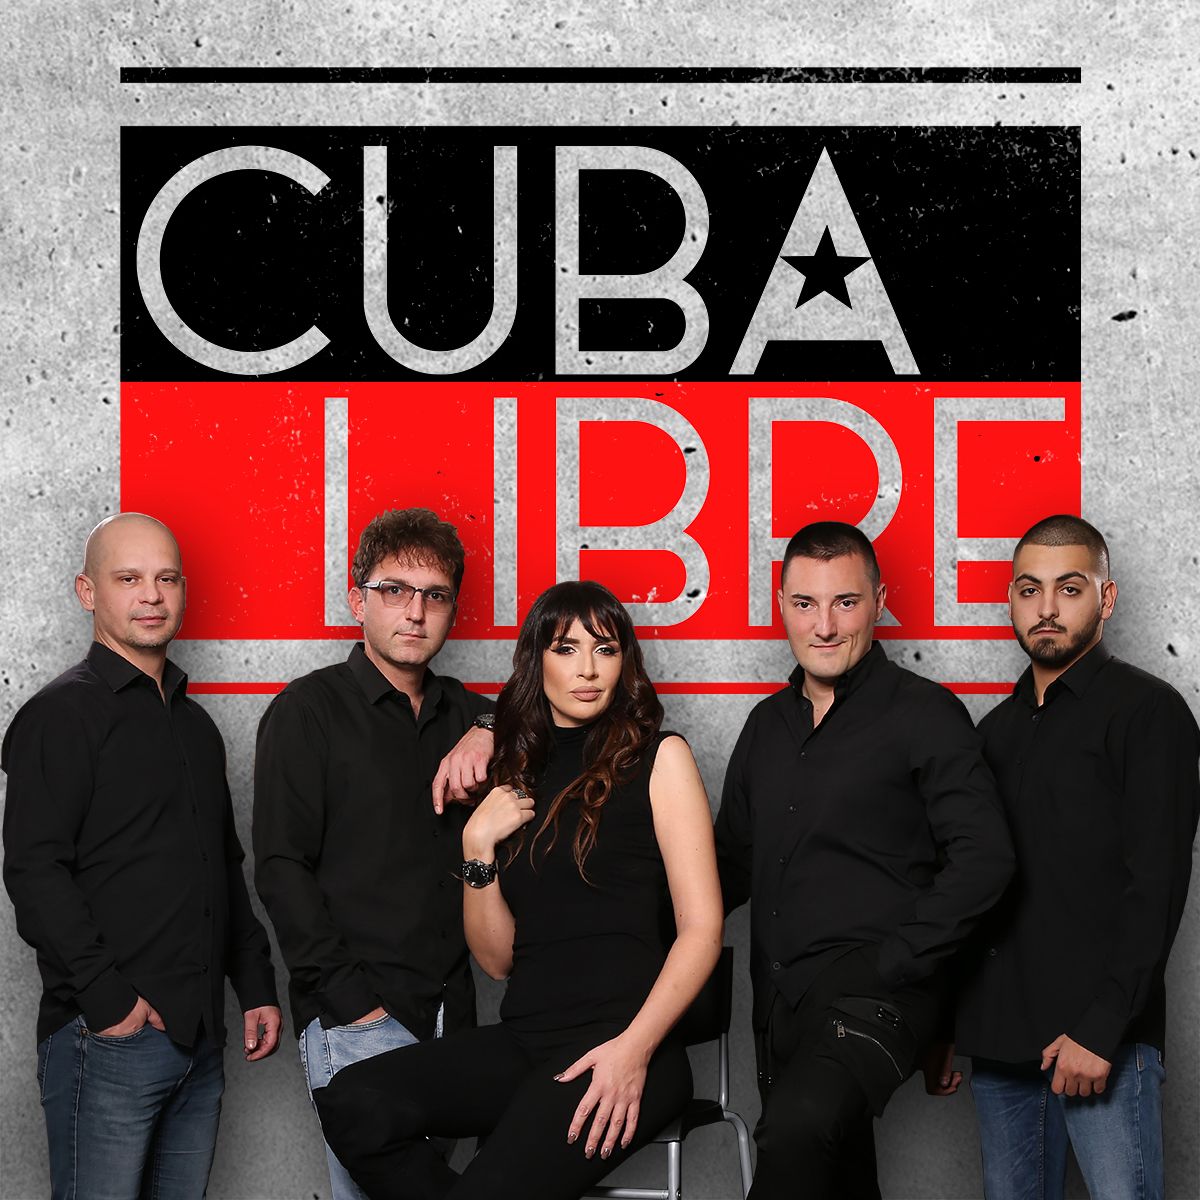 Cuba Libre Band